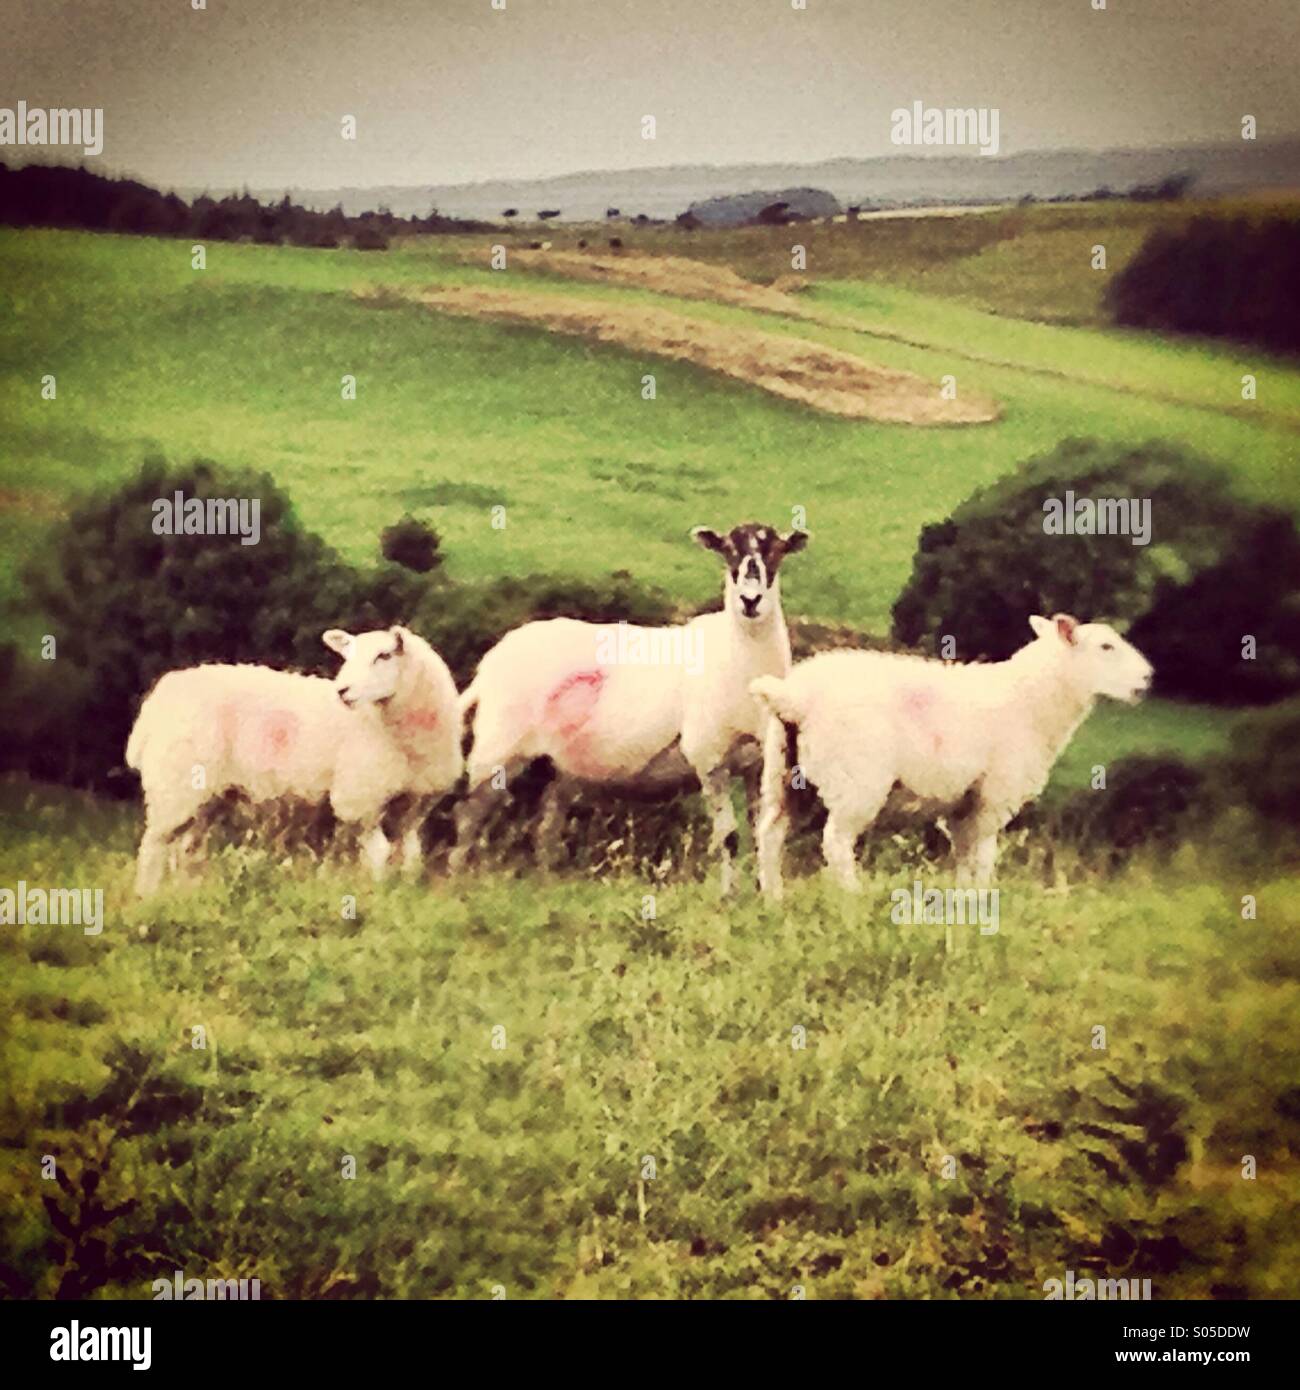 Tres ovejas en un campo uno mirando a la izquierda, uno mirando a la cámara y uno mirando a la derecha. Foto de stock